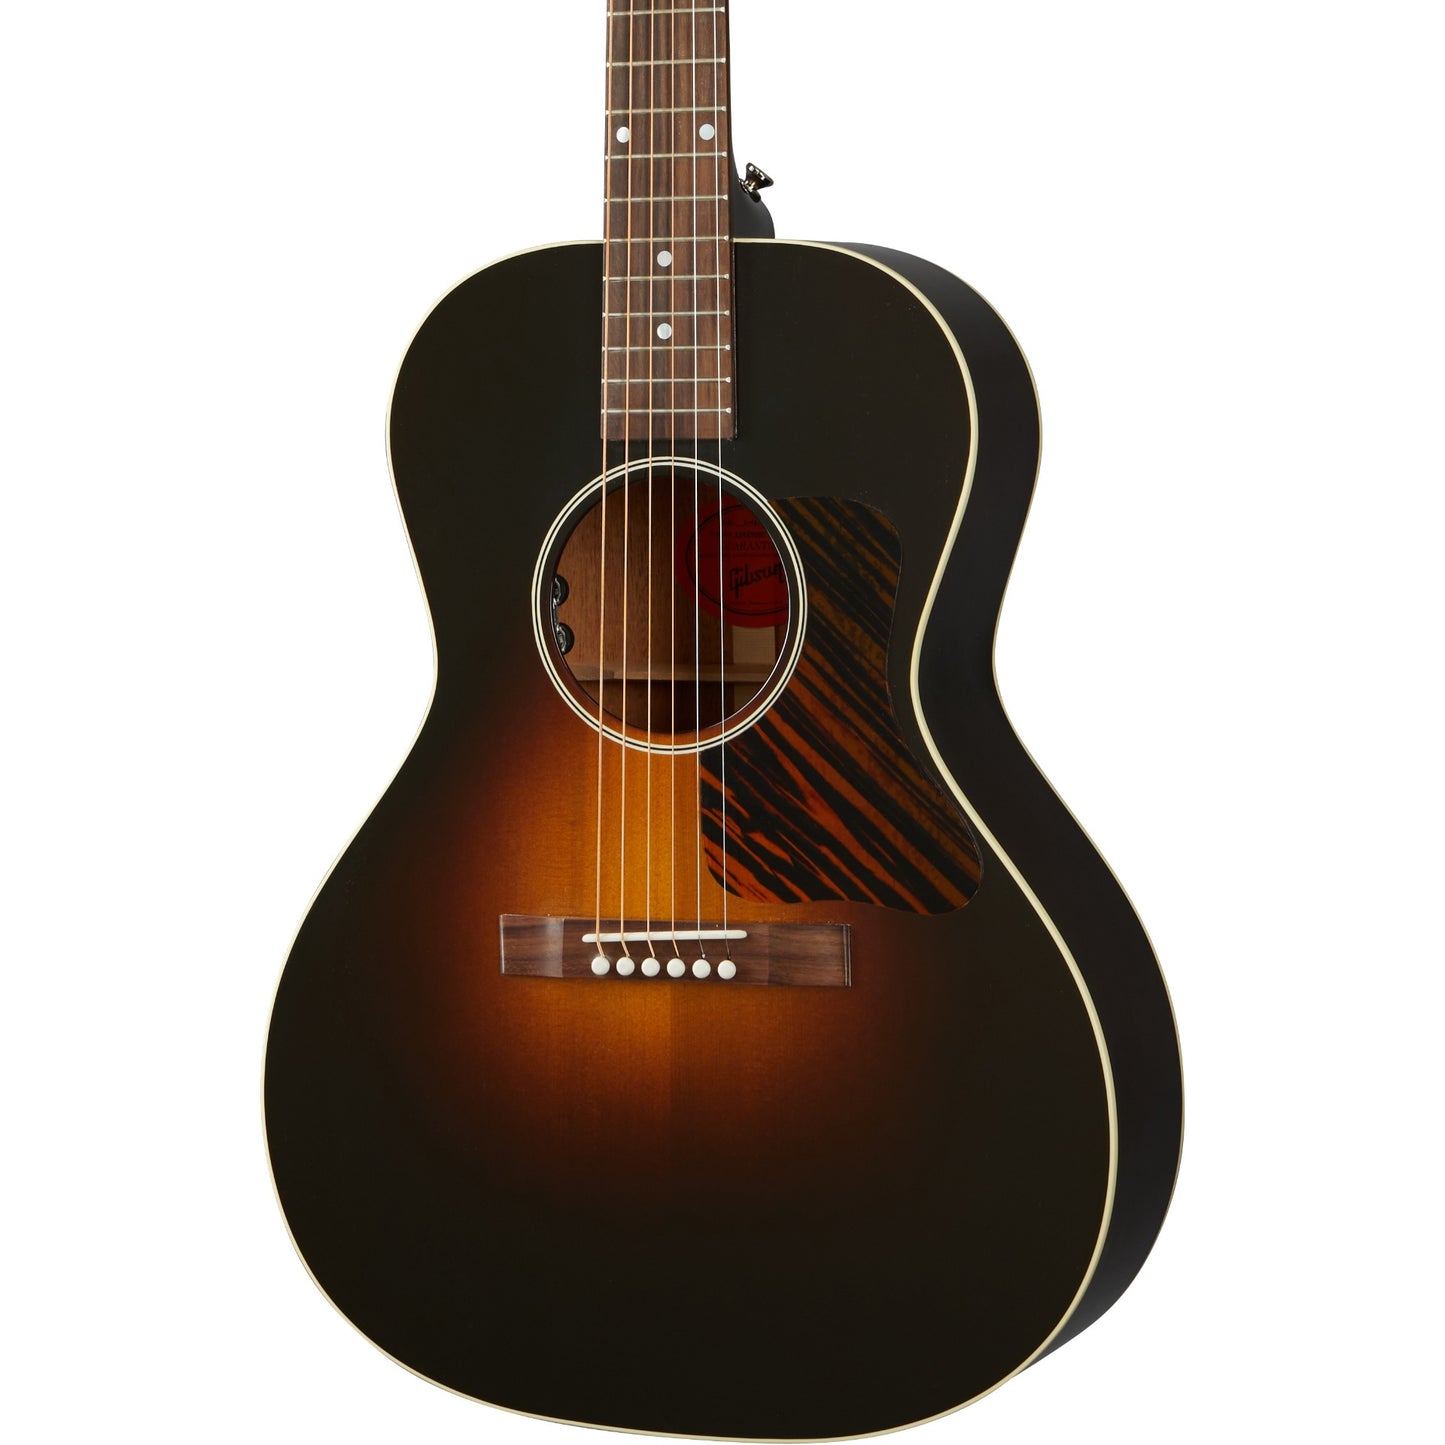 Gibson L-00 Original Acoustic Guitar - Vintage Sunburst